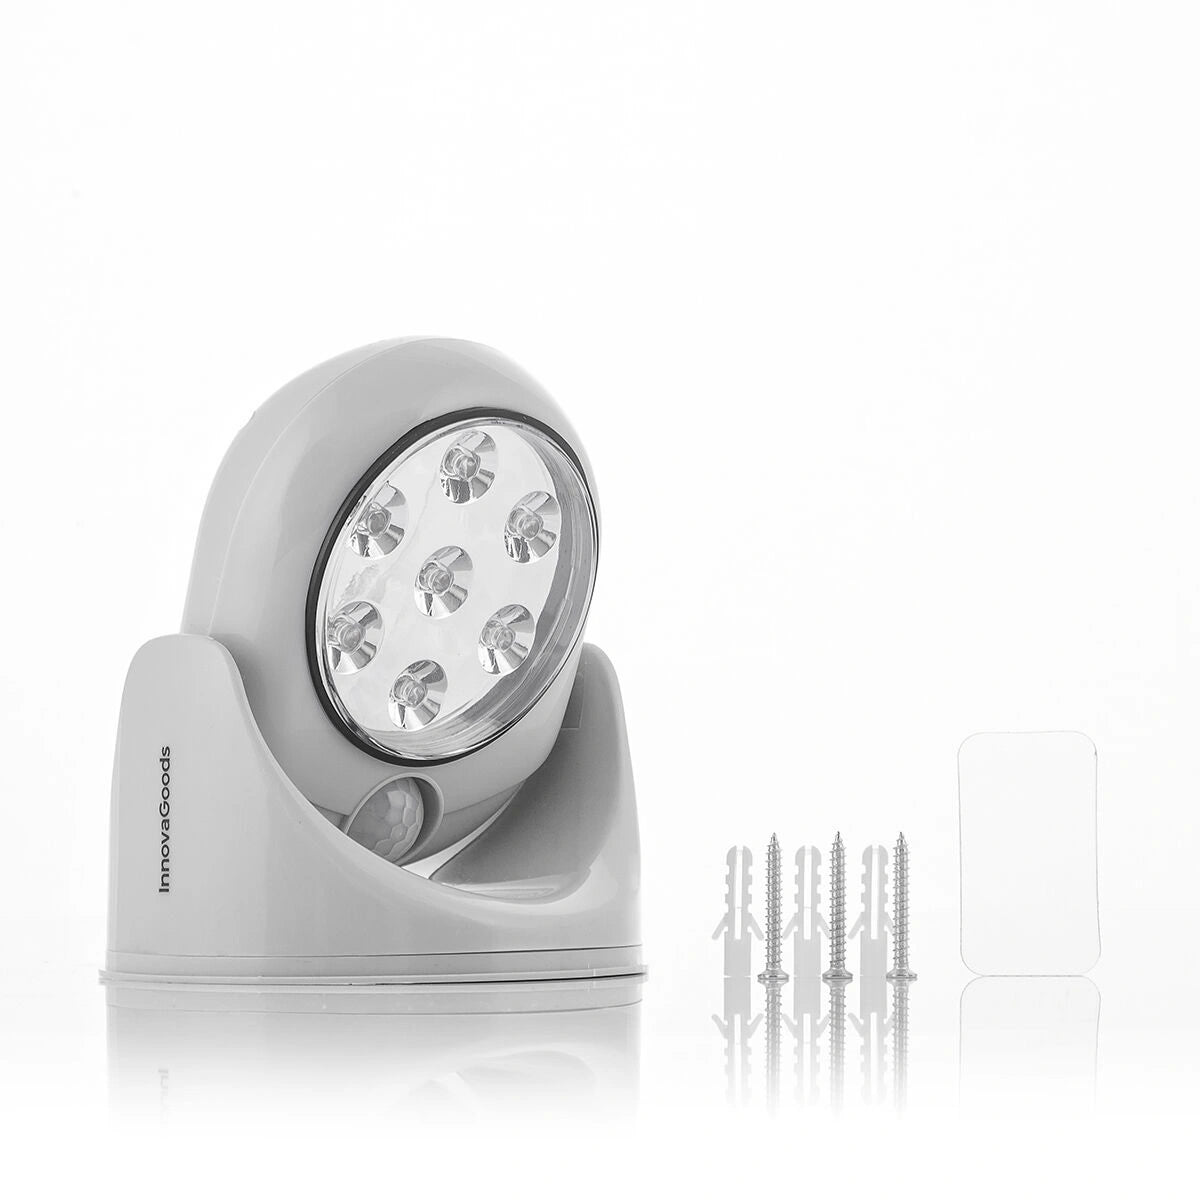 LED lys som kan monteres enten med skruer eller med sterk dobbeltsidig teip